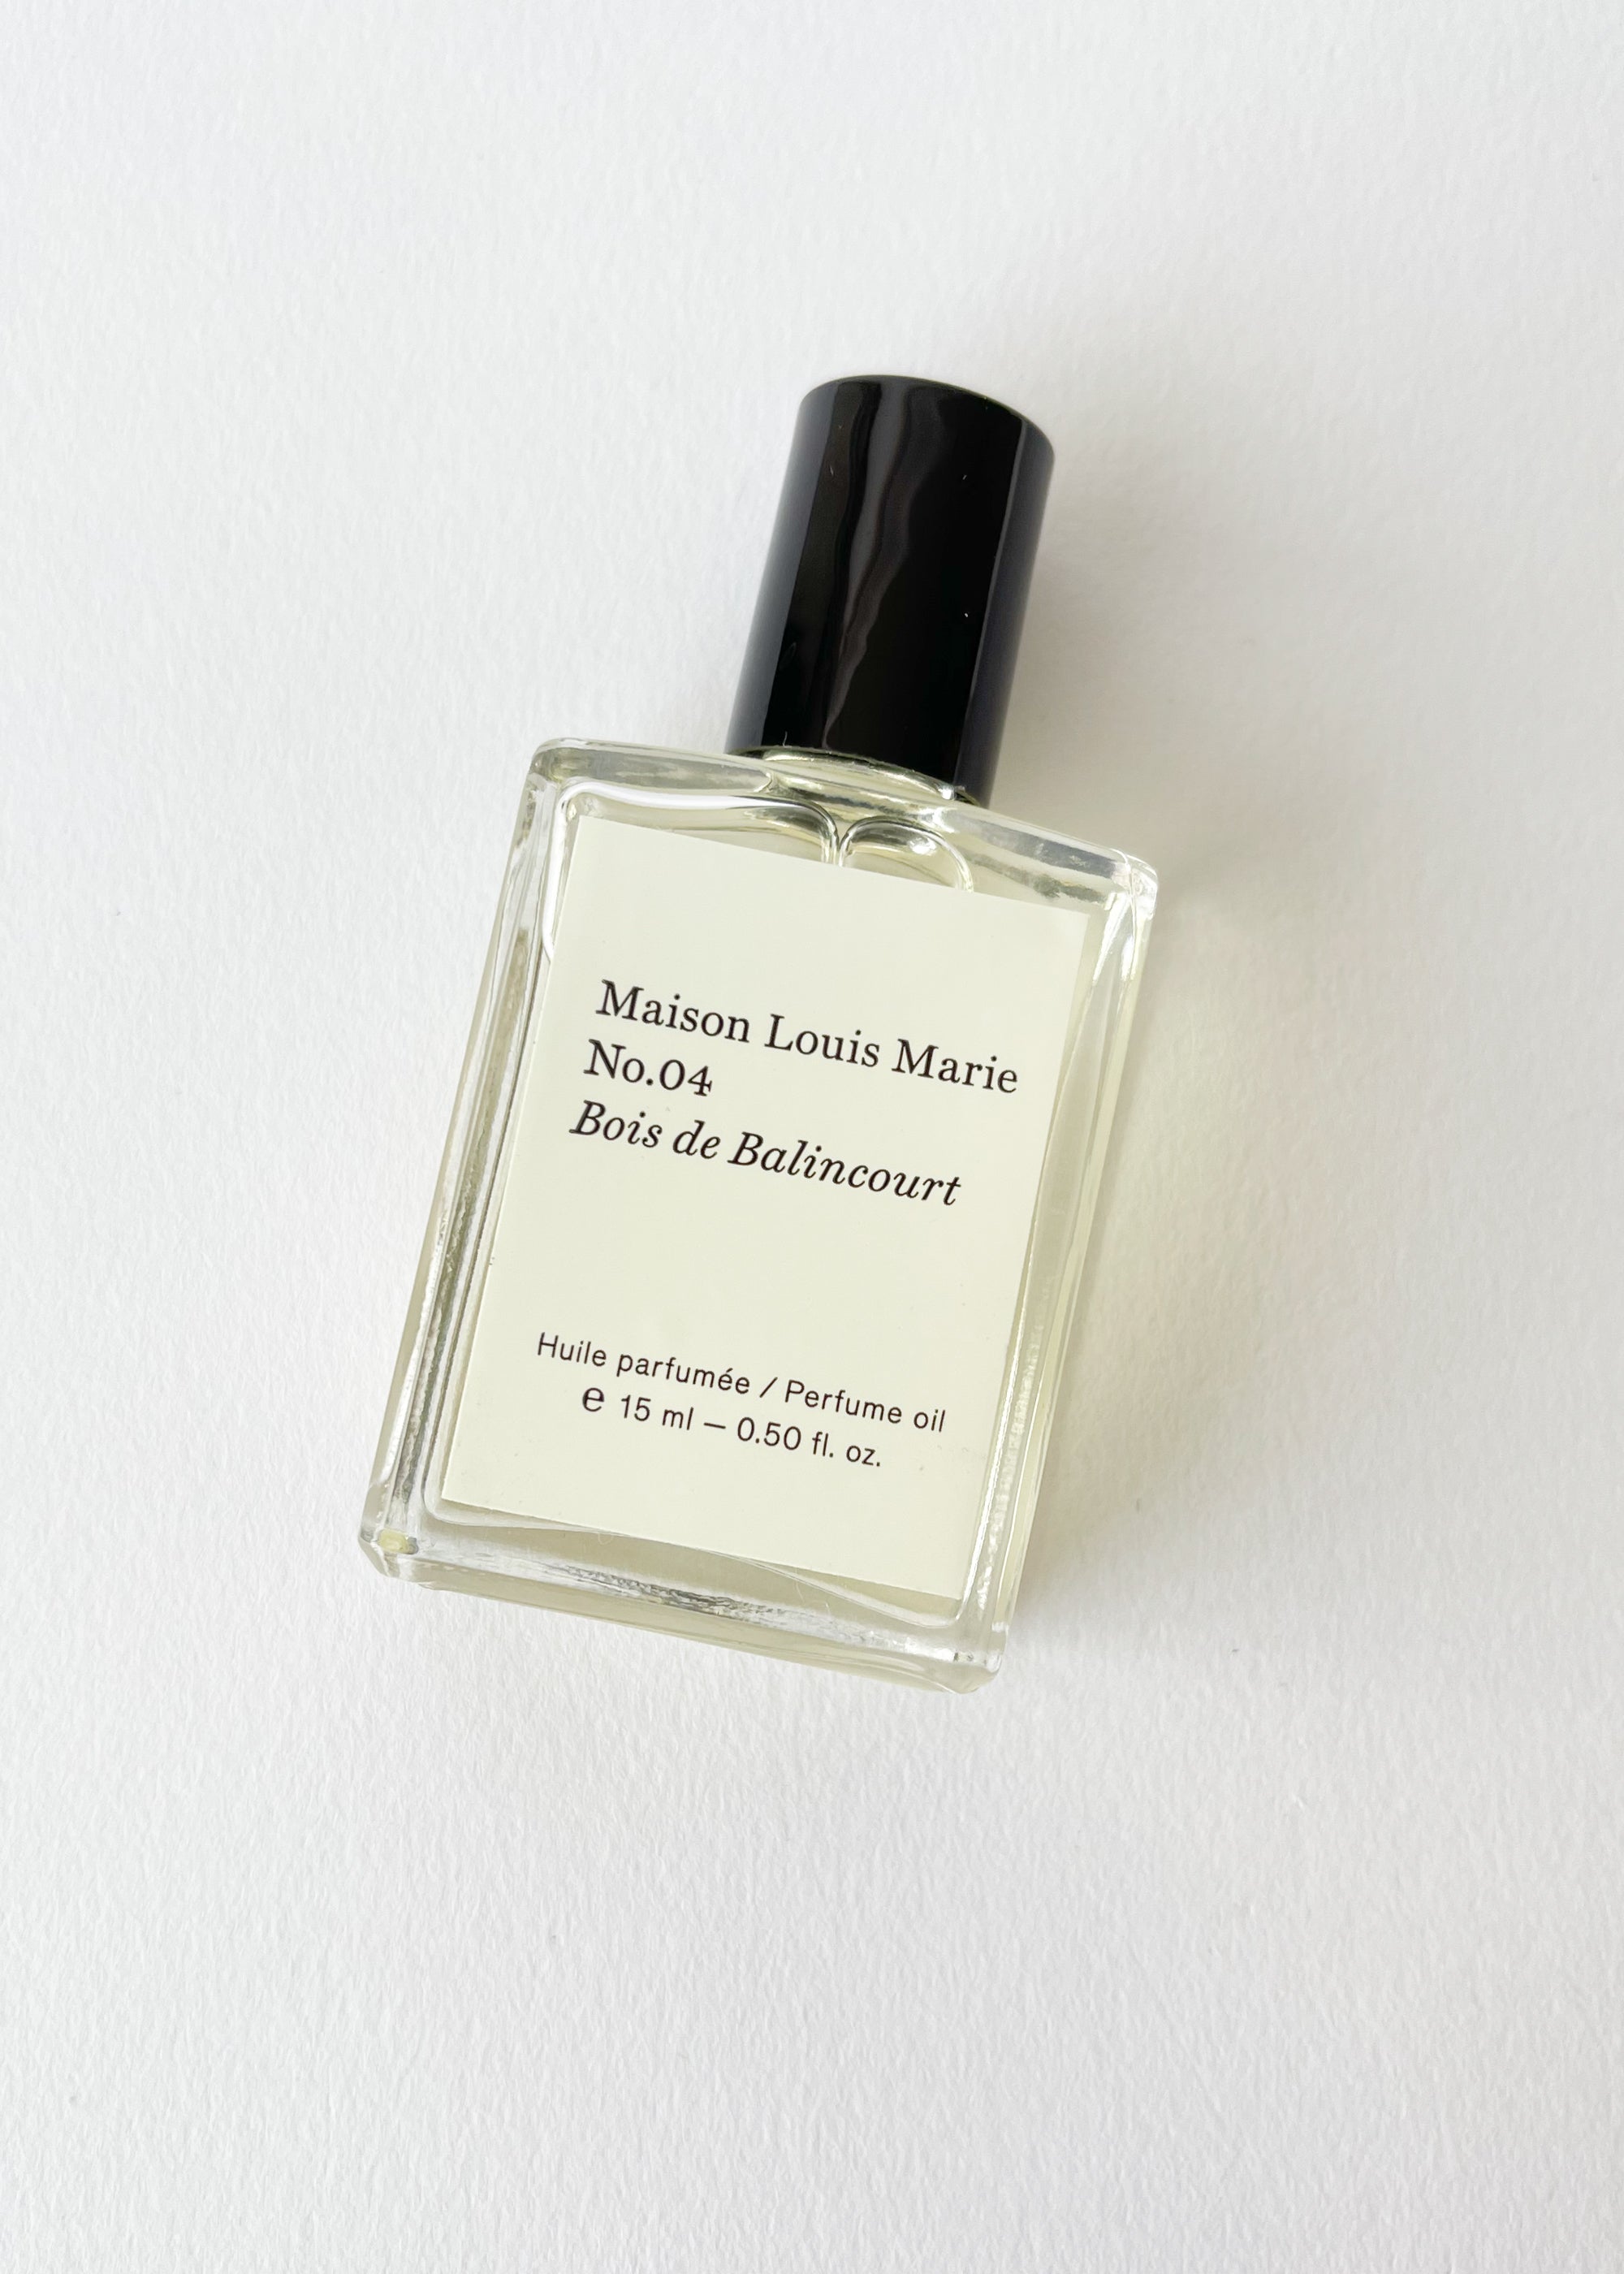 No.04 Bois de Balincourt Perfume Oil - Maison Louis Marie